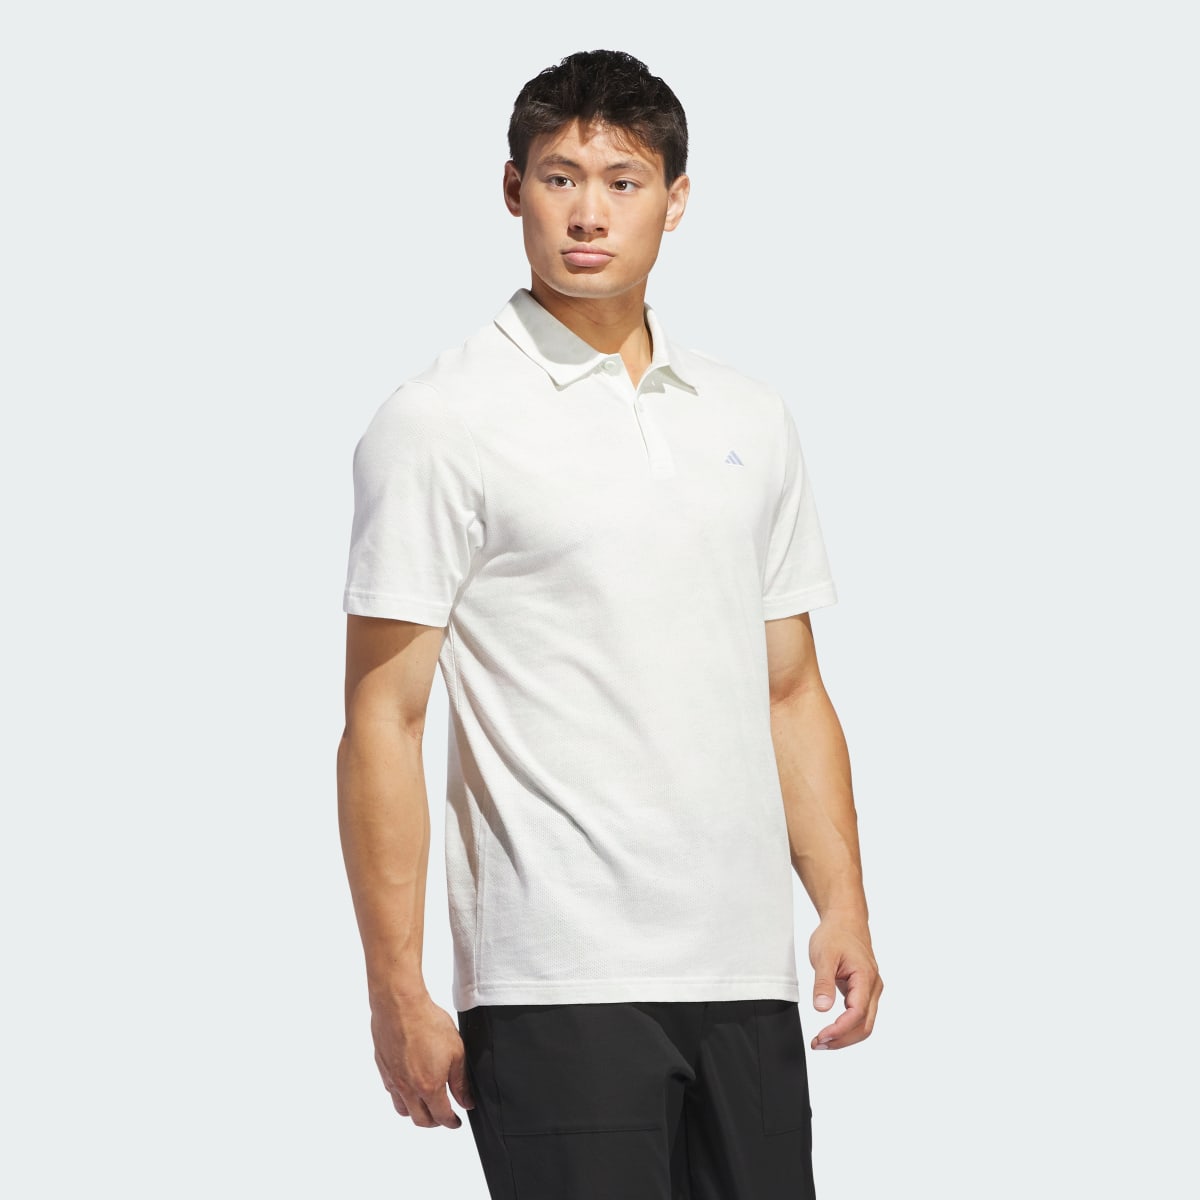 Adidas Go-To Printed Mesh Polo Shirt. 4